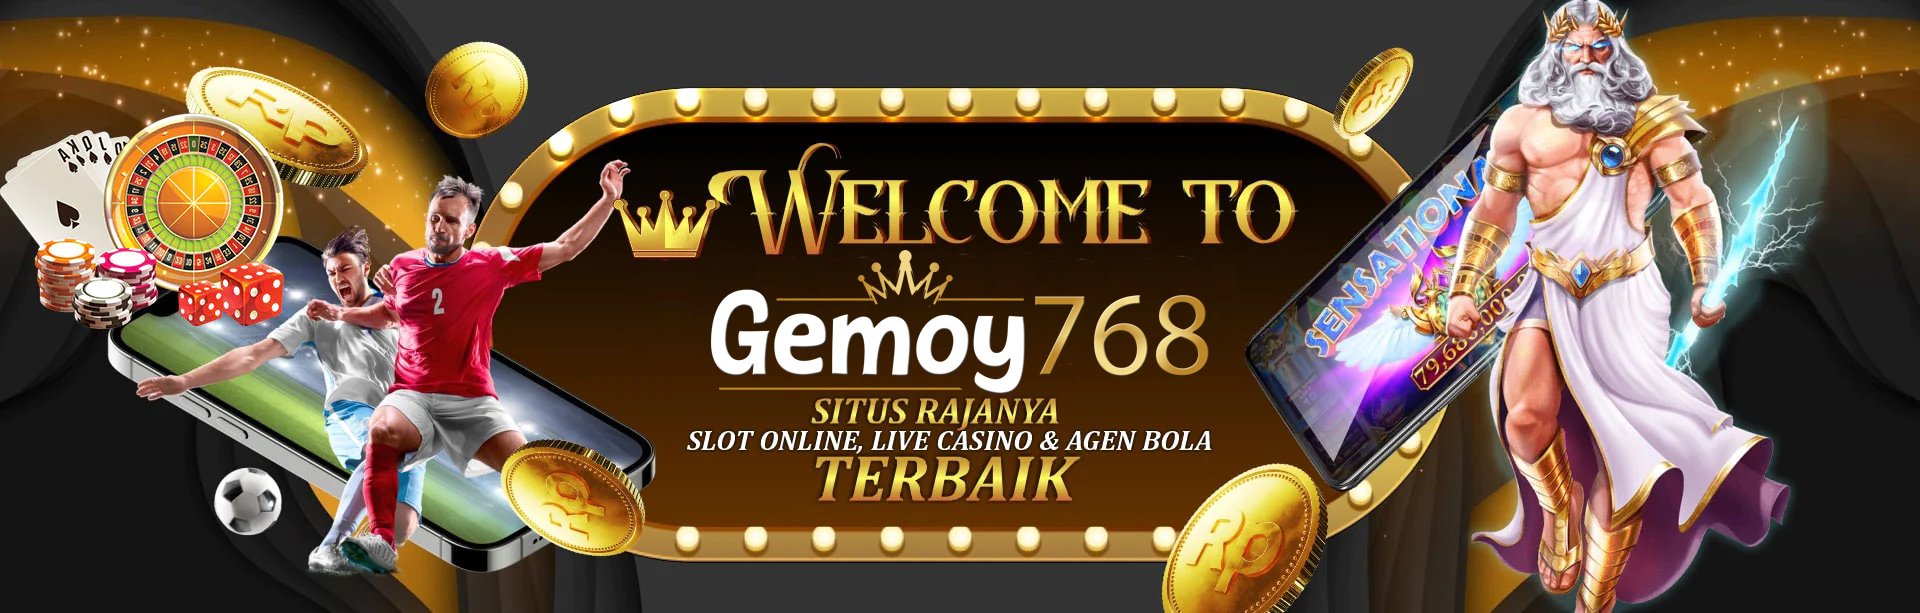 banner 2 gemoy768